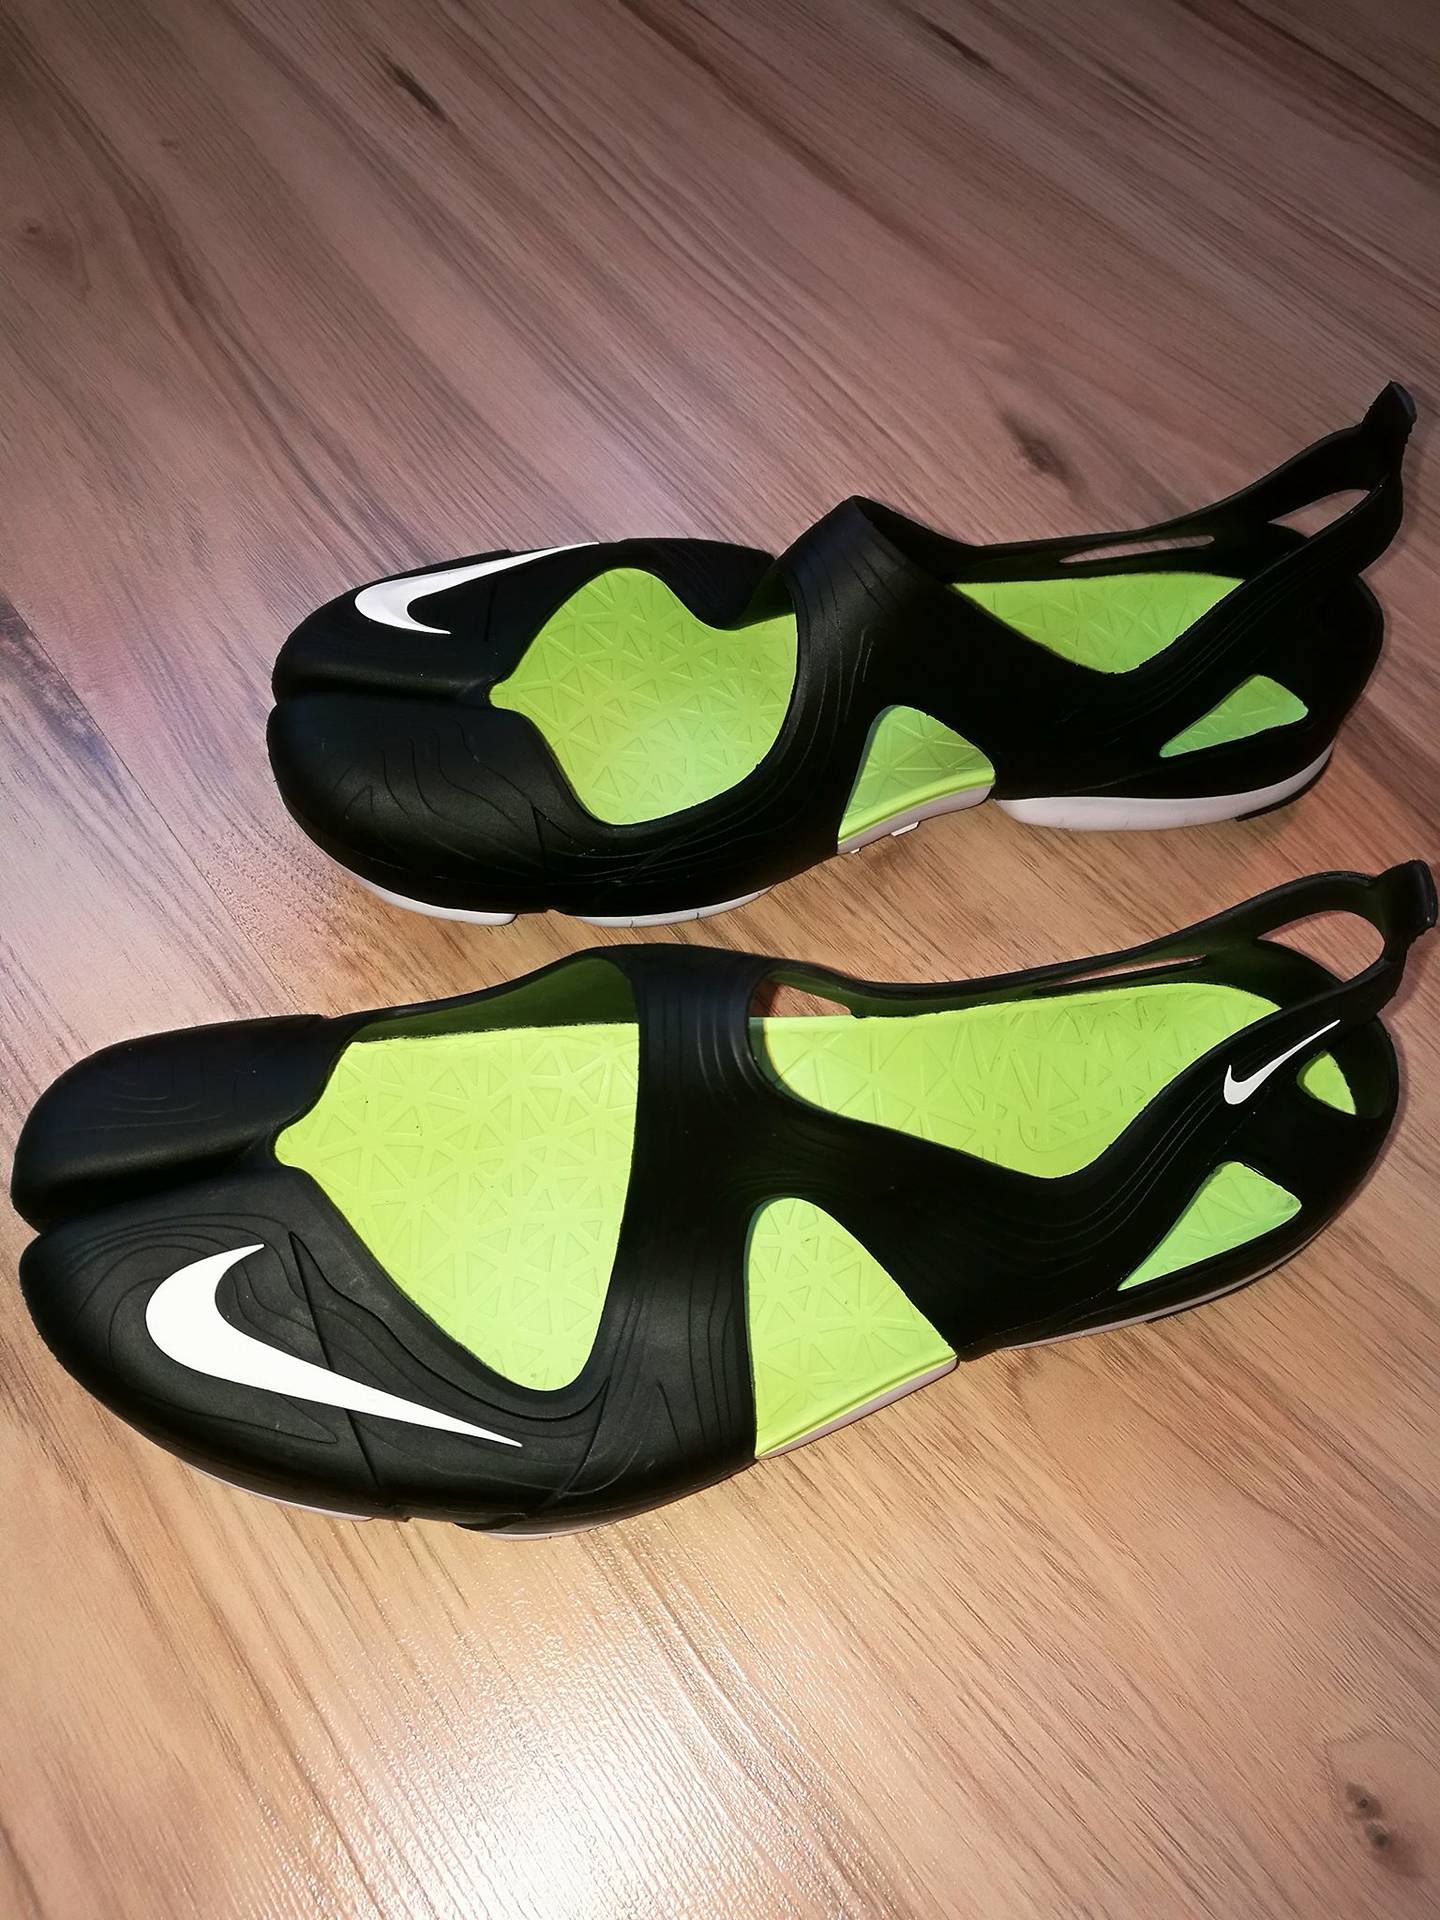 Nike buty do wody rozm.41/42 stan idealny - 7031861851 - oficjalne archiwum  Allegro